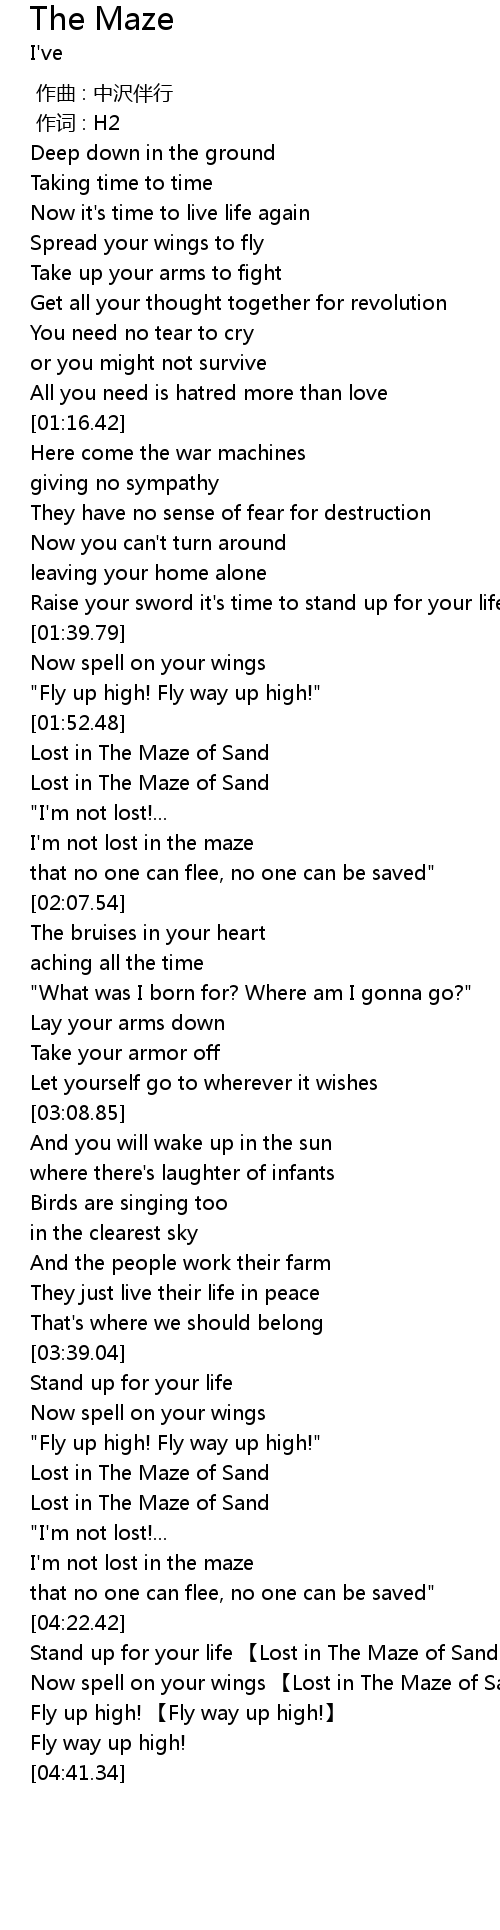 The Maze Lyrics Follow Lyrics